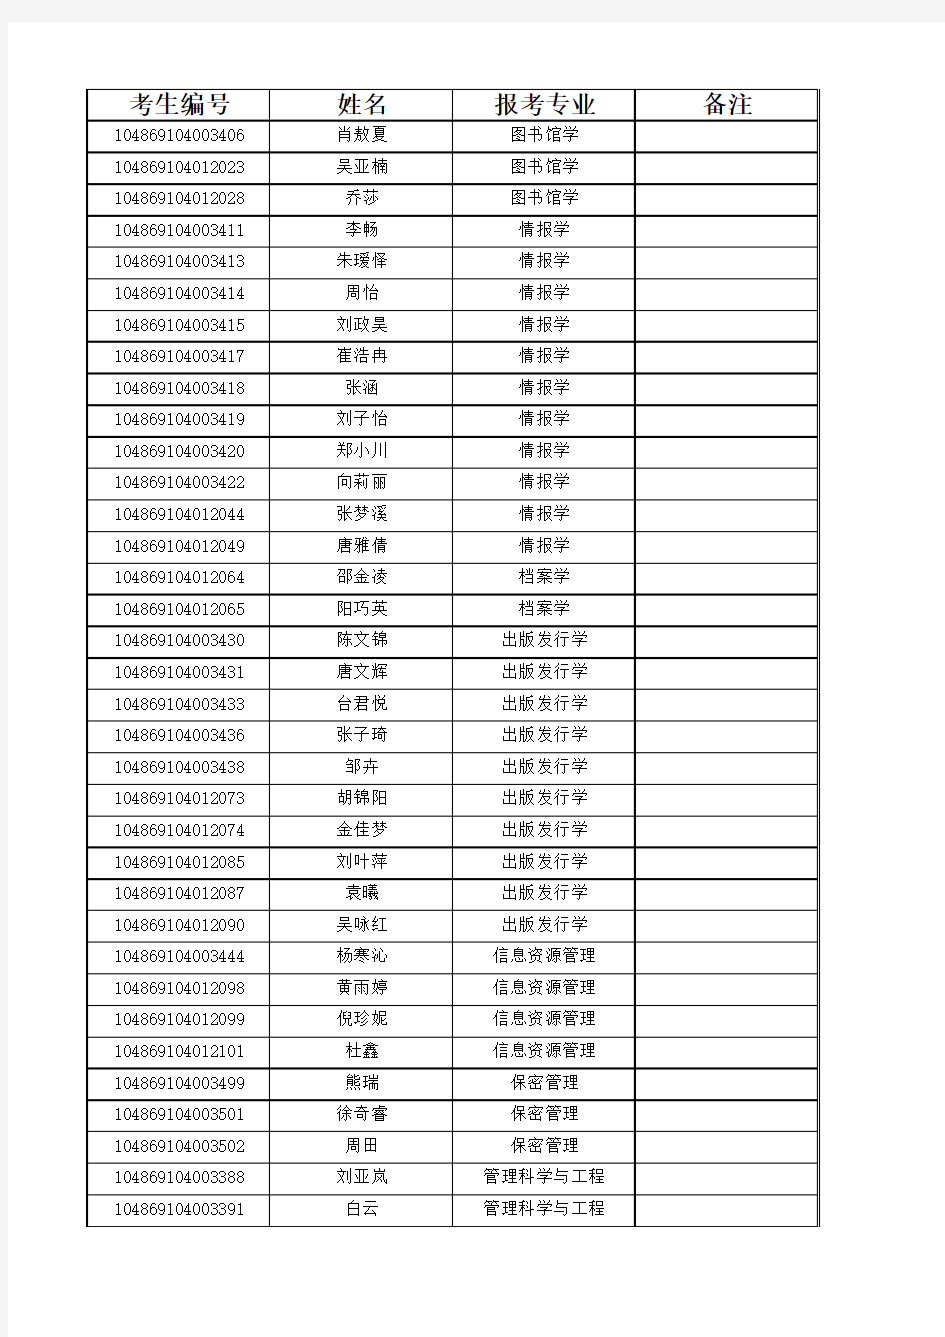 2019武汉大学信息管理学院学术学位硕士研究生复试名单